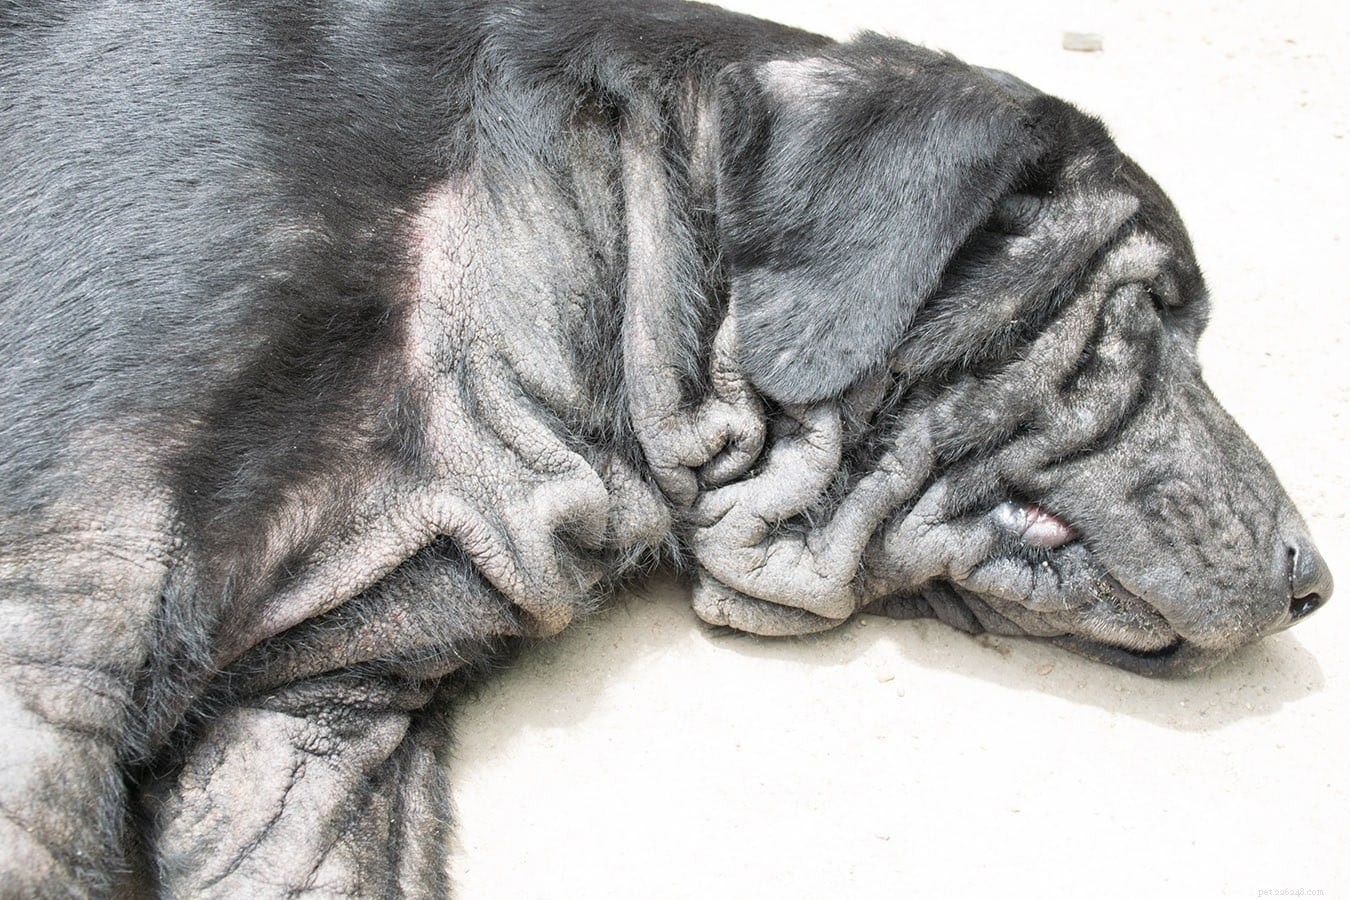 Malassezia dermatitida (kvasinkové infekce) u psů:příčiny, léčba, prevence